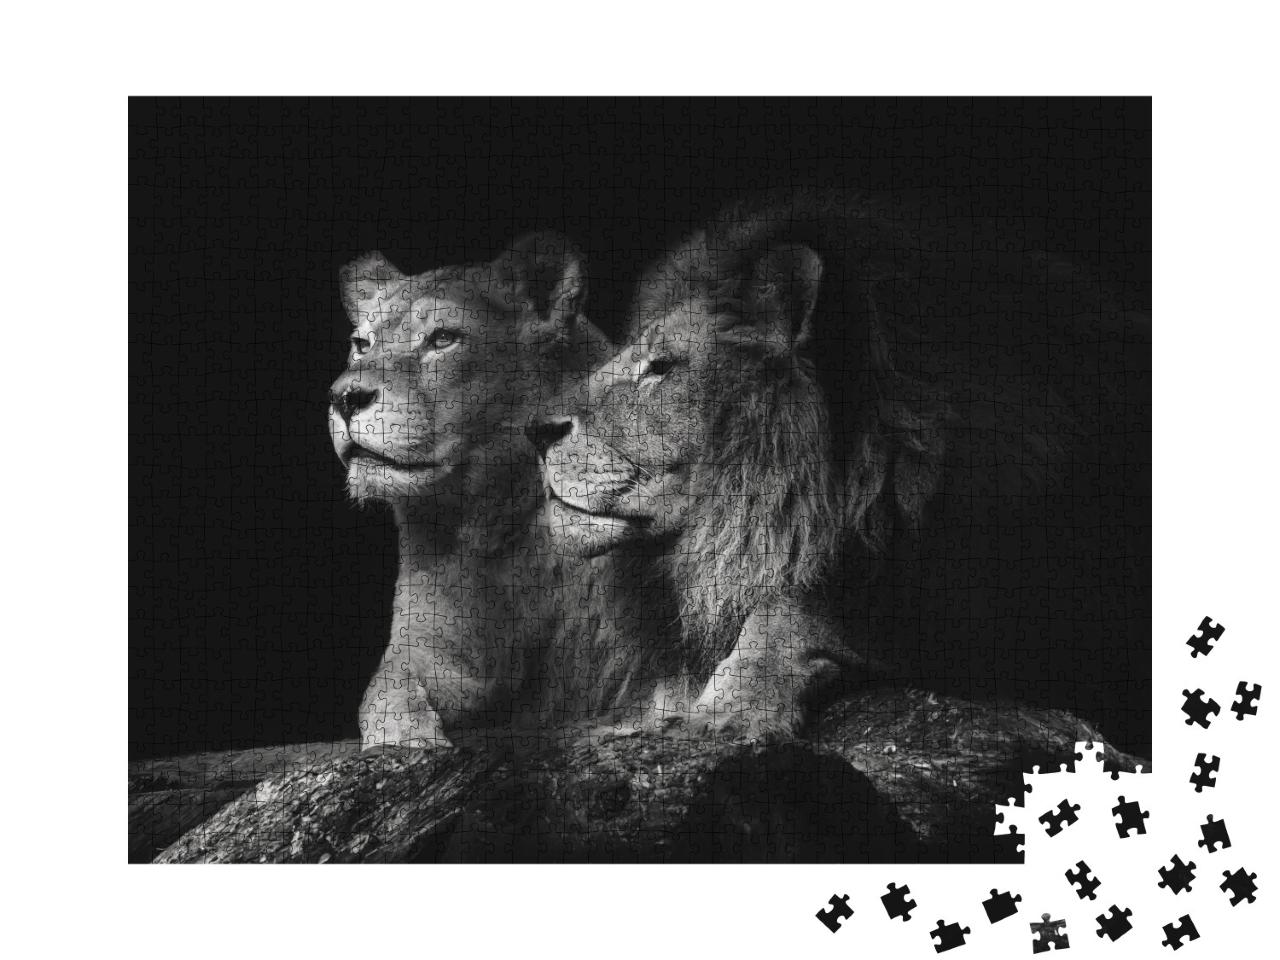 Puzzle de 1000 pièces « Un couple de lions »